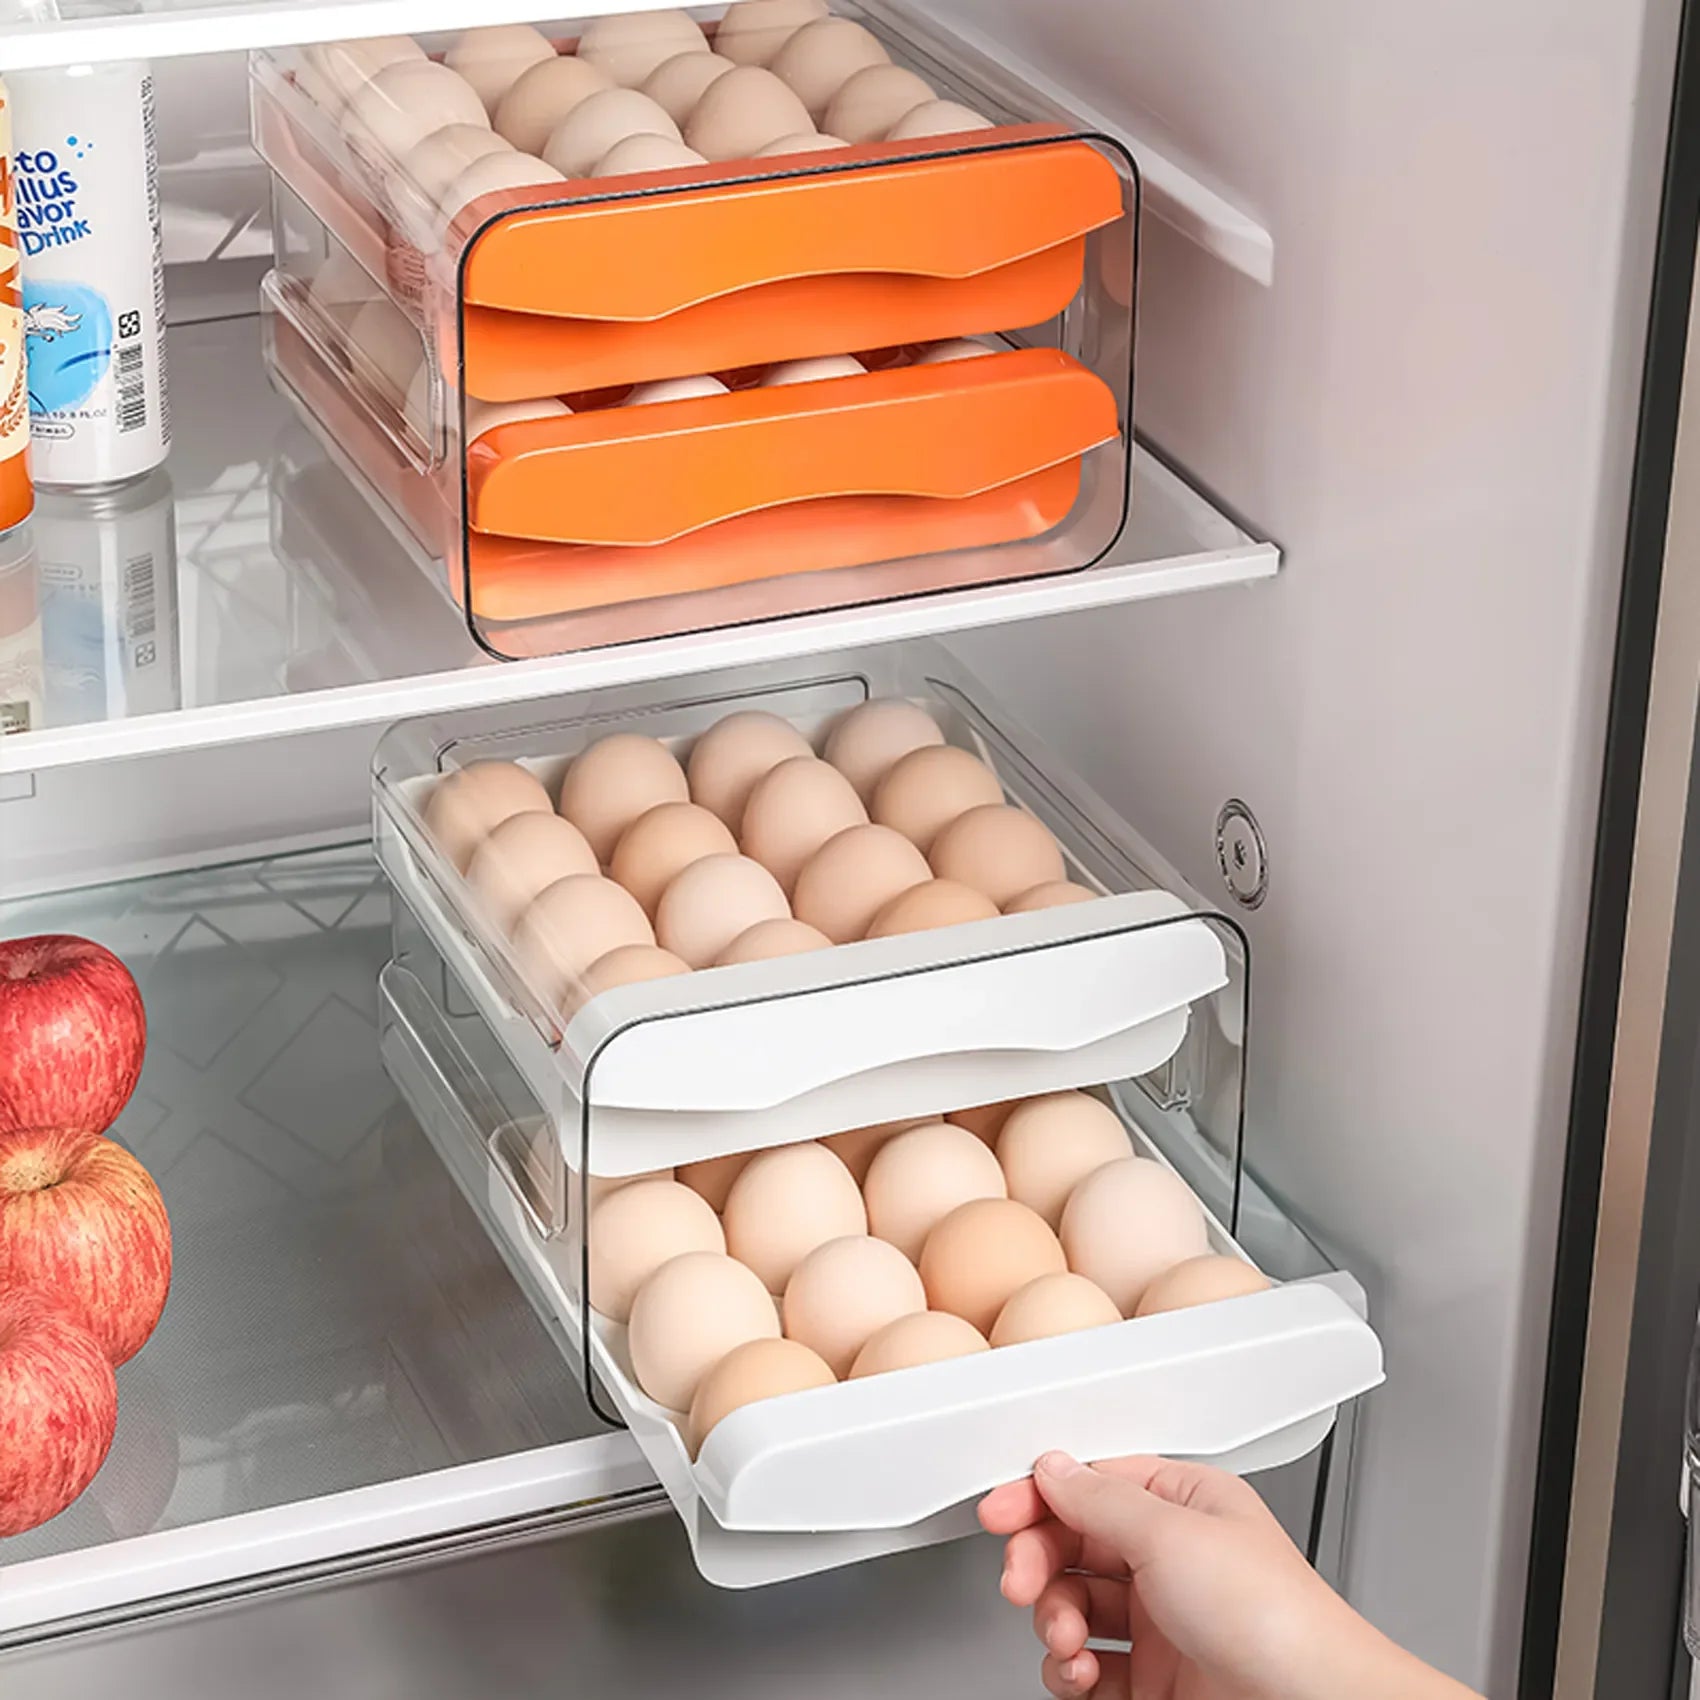 Organizador de Ovos: Prático, transparente e empilhável para 32 ovos. Otimize sua geladeira com estilo e organização